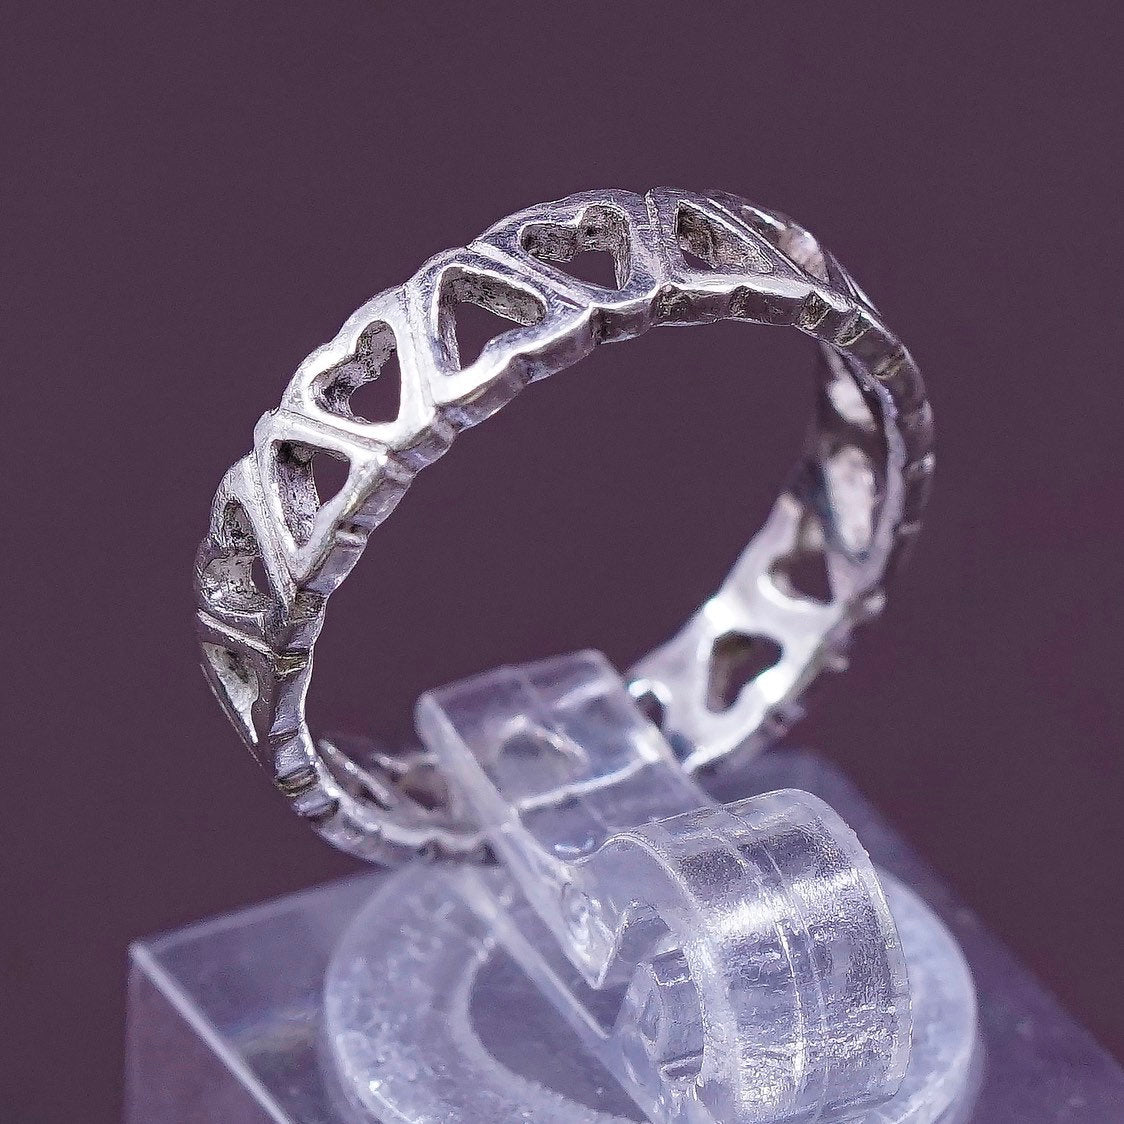 sz 5, vtg Sterling silver Handmade heart ring, 925 band